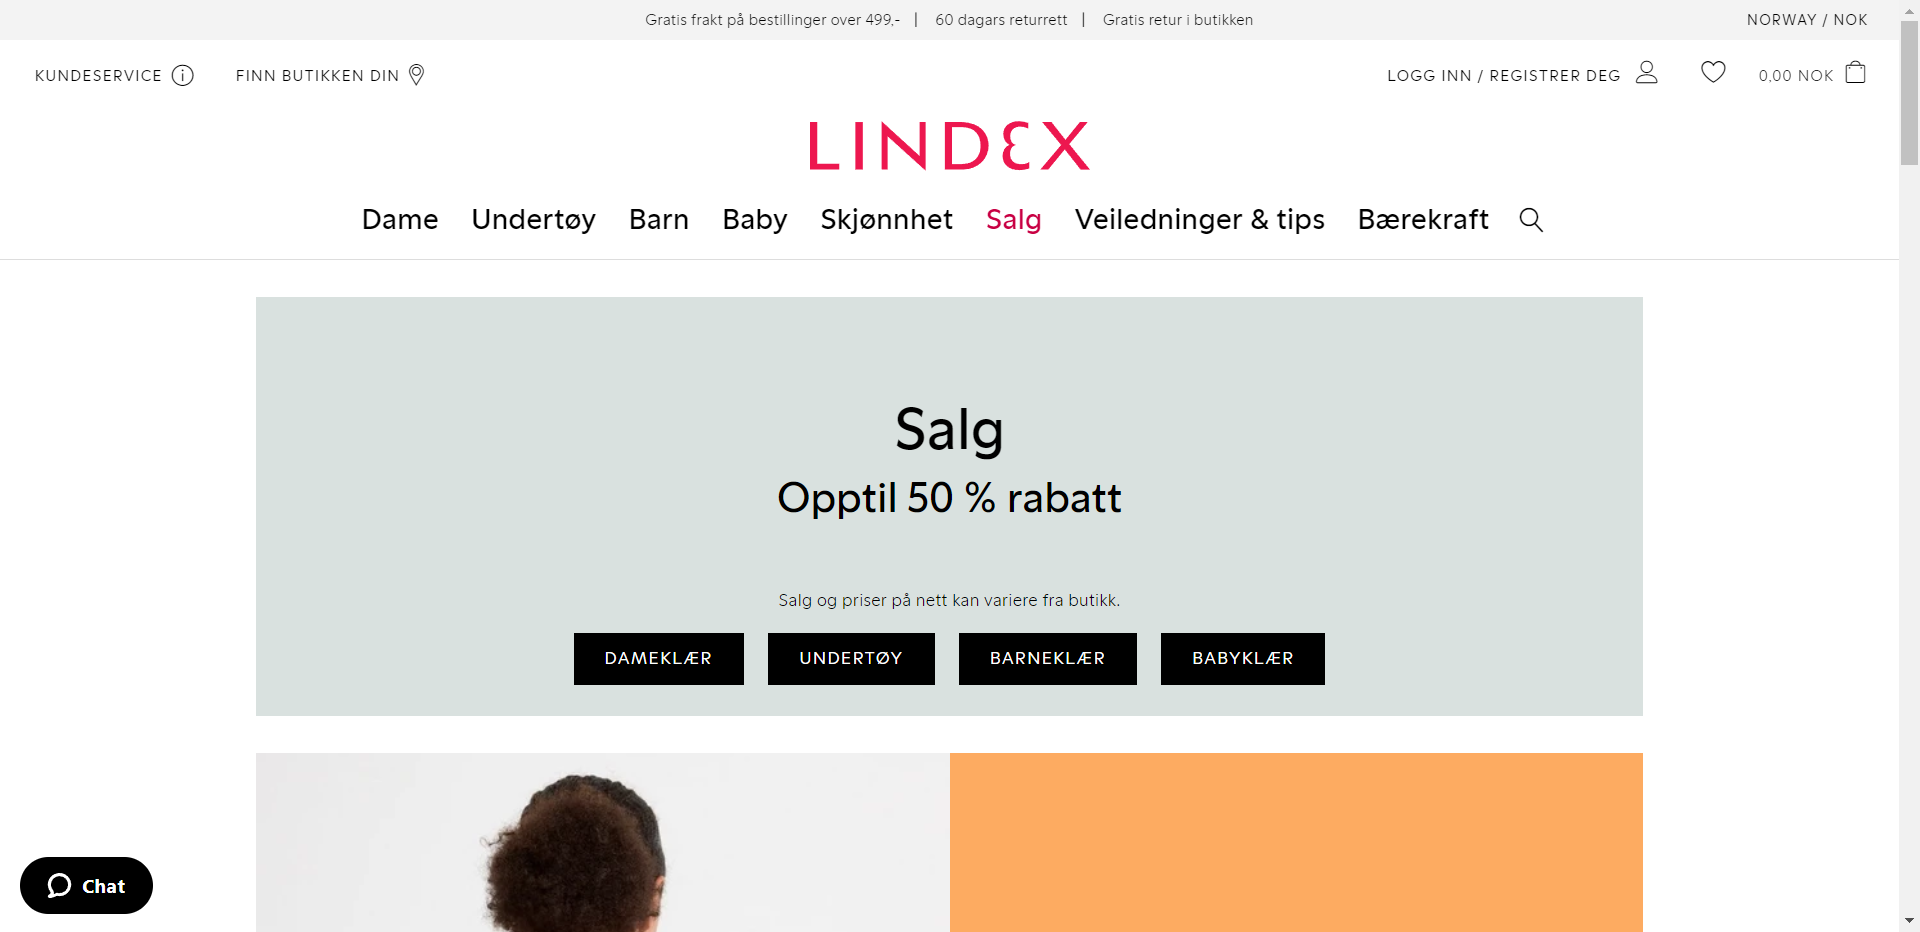 Lindex nettbutikk - Les omtalen av nettbutikken